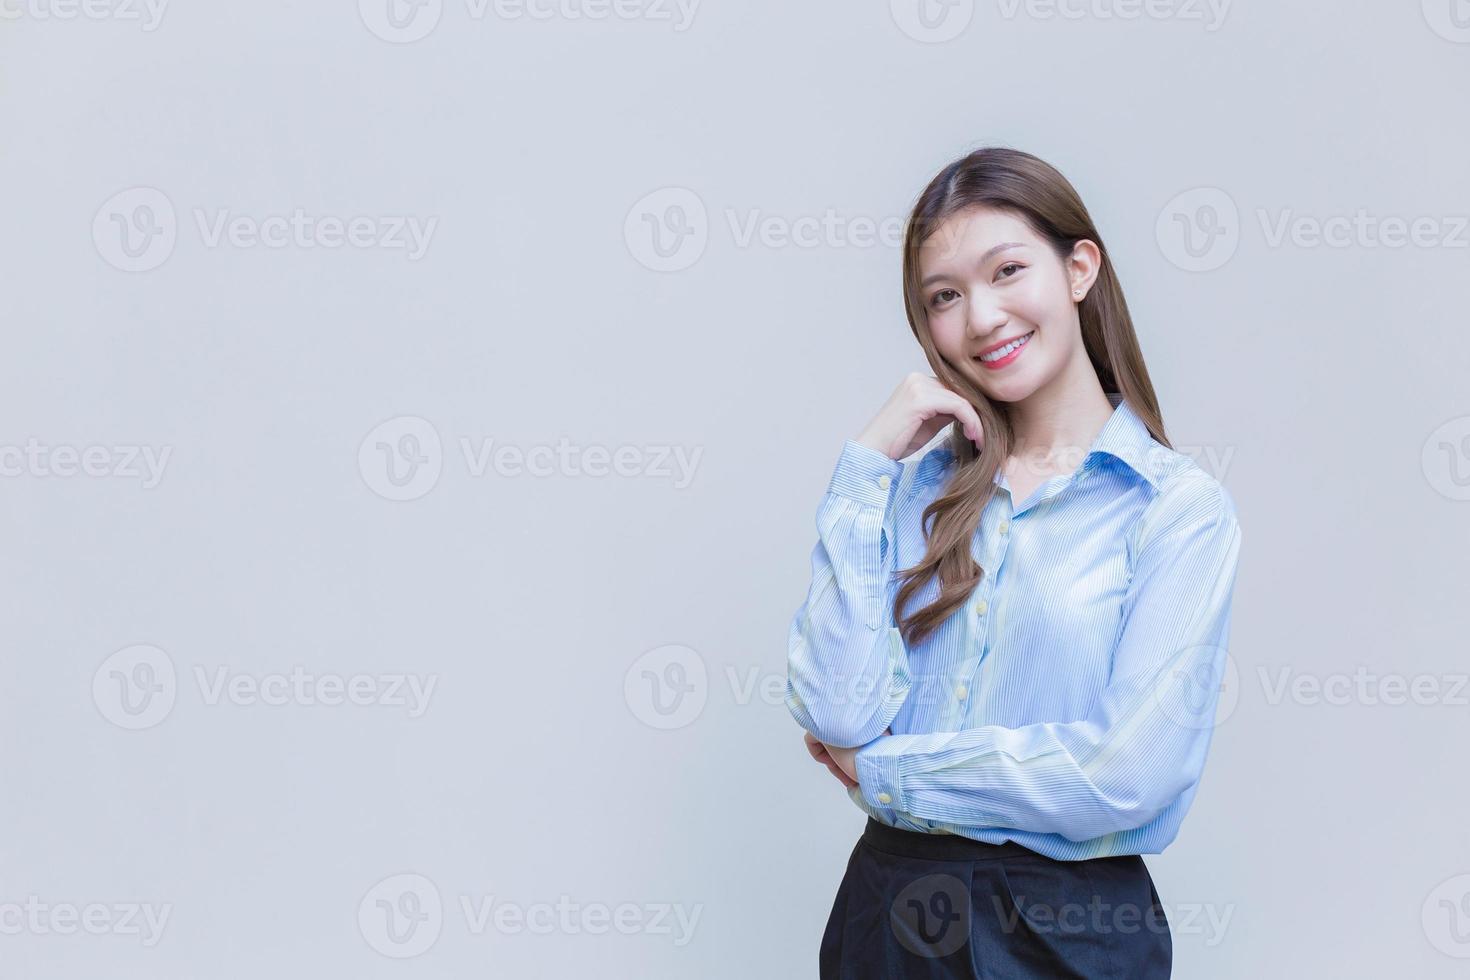 junge asiatische geschäftsfrau mit langen haaren, die ein blaues langarmhemd trägt, lächelt glücklich, während sie die arme verschränkt, um etwas auf weißem hintergrund zu präsentieren. foto